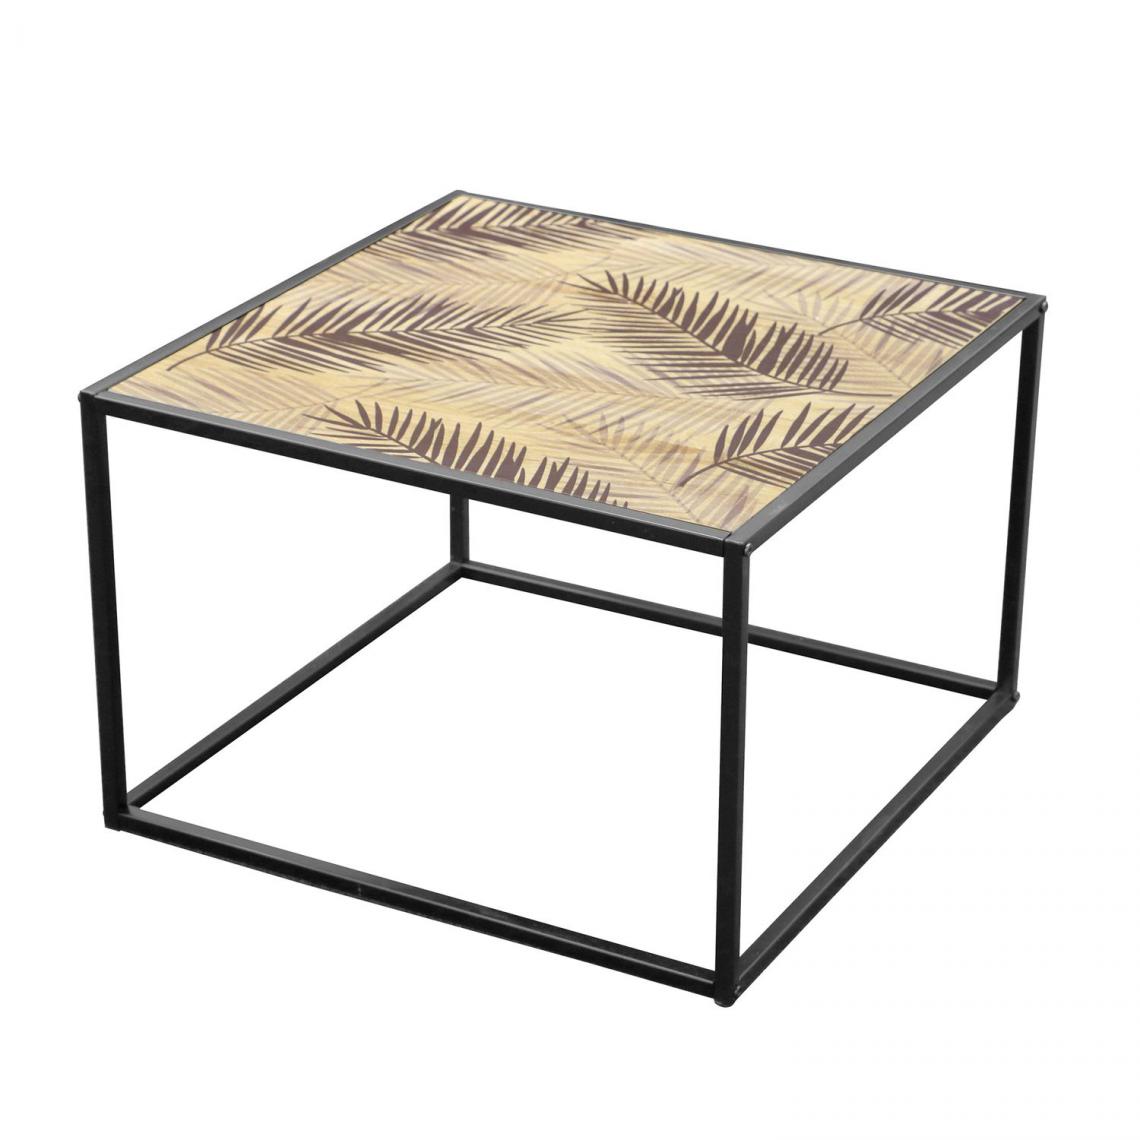 Urban Living - Table basse Palm Spring - H. 40 cm - Noir et Doré - Tables basses